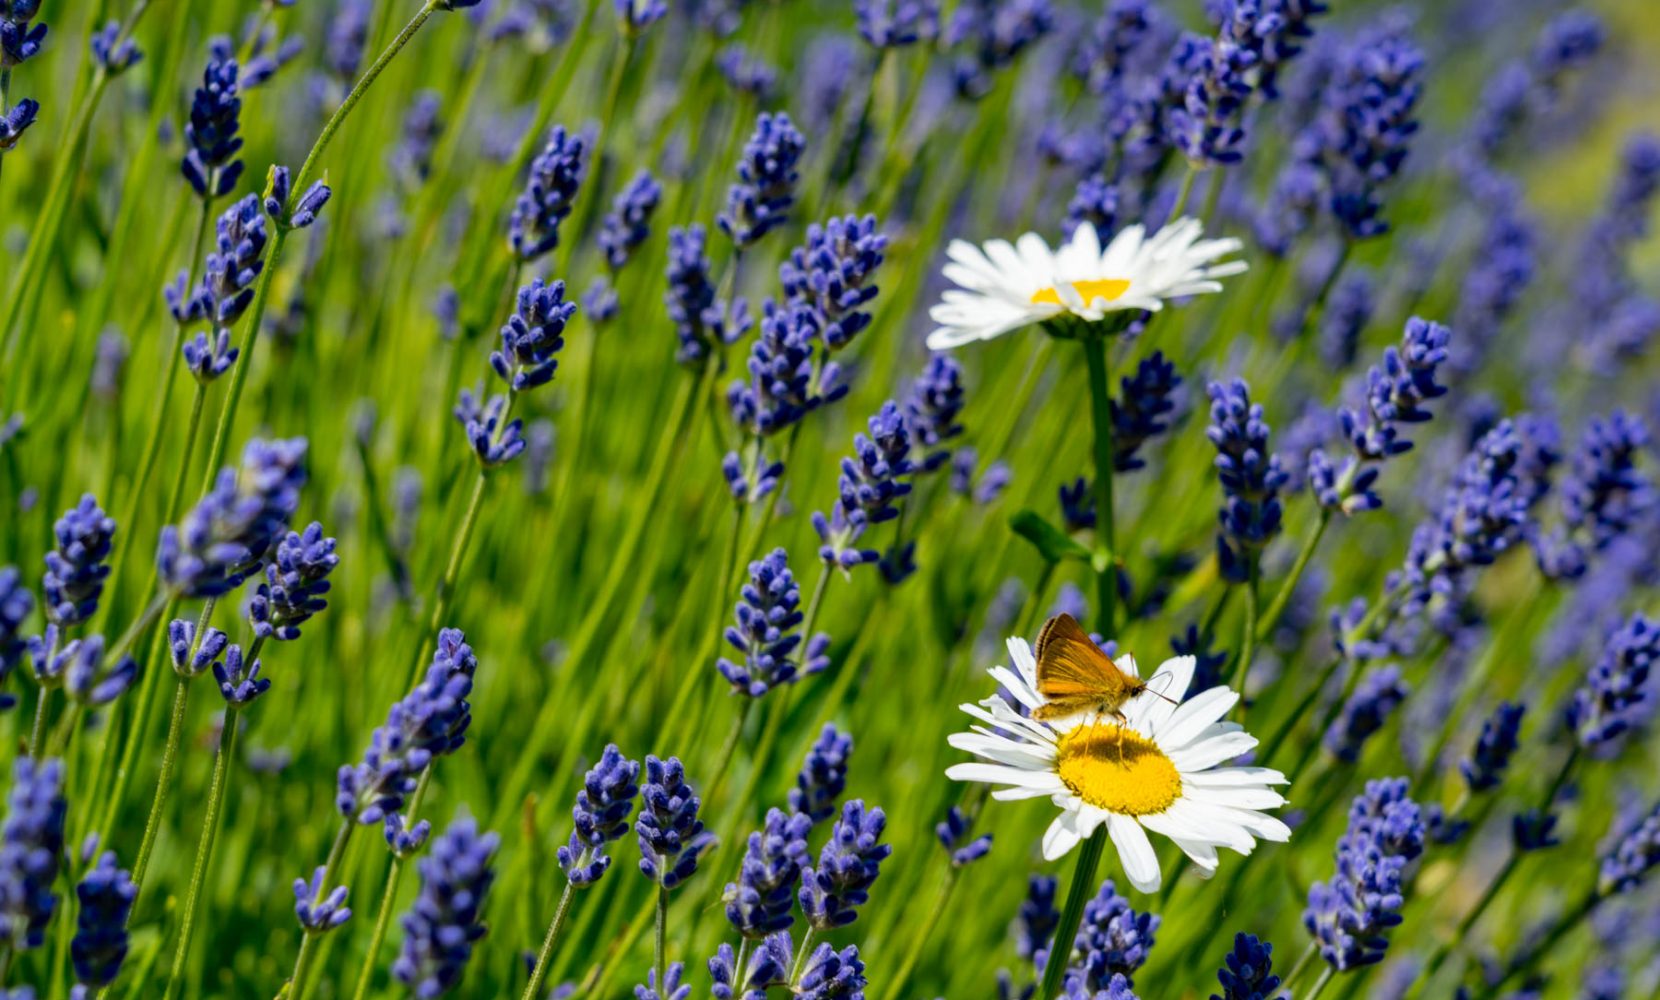 Butterfly on flower in lavendar field